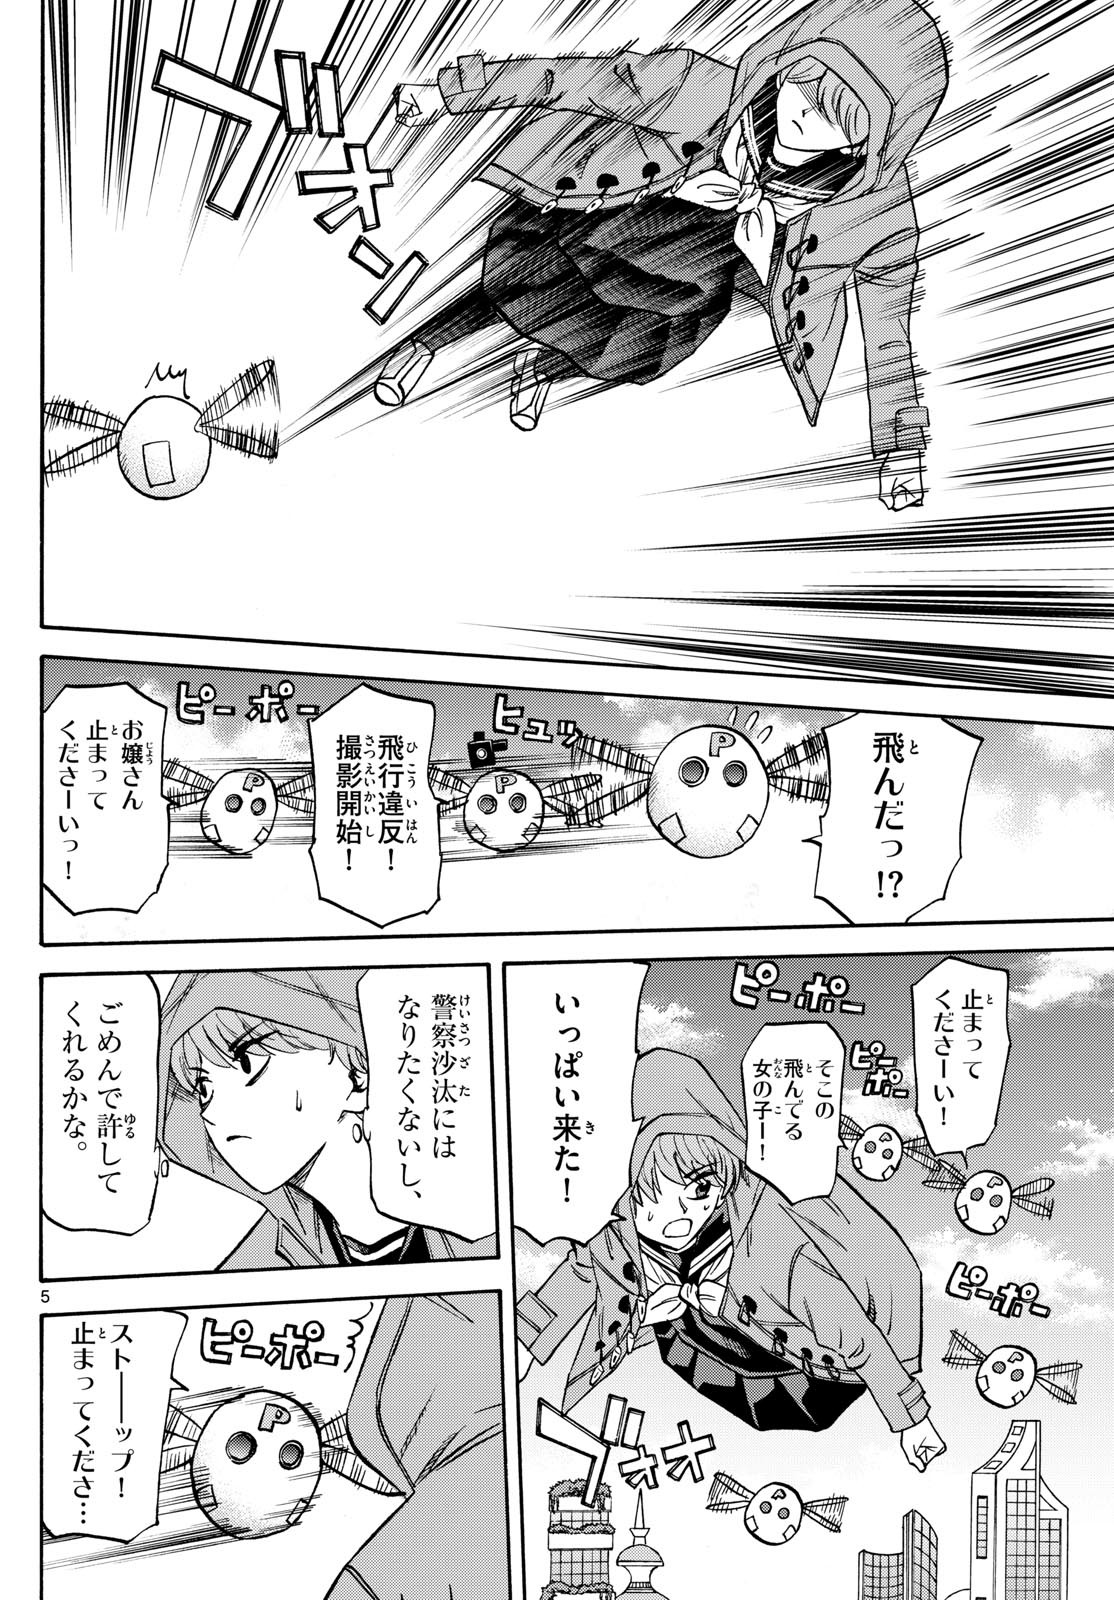 Ryu-to-Ichigo - Chapter 182 - Page 4